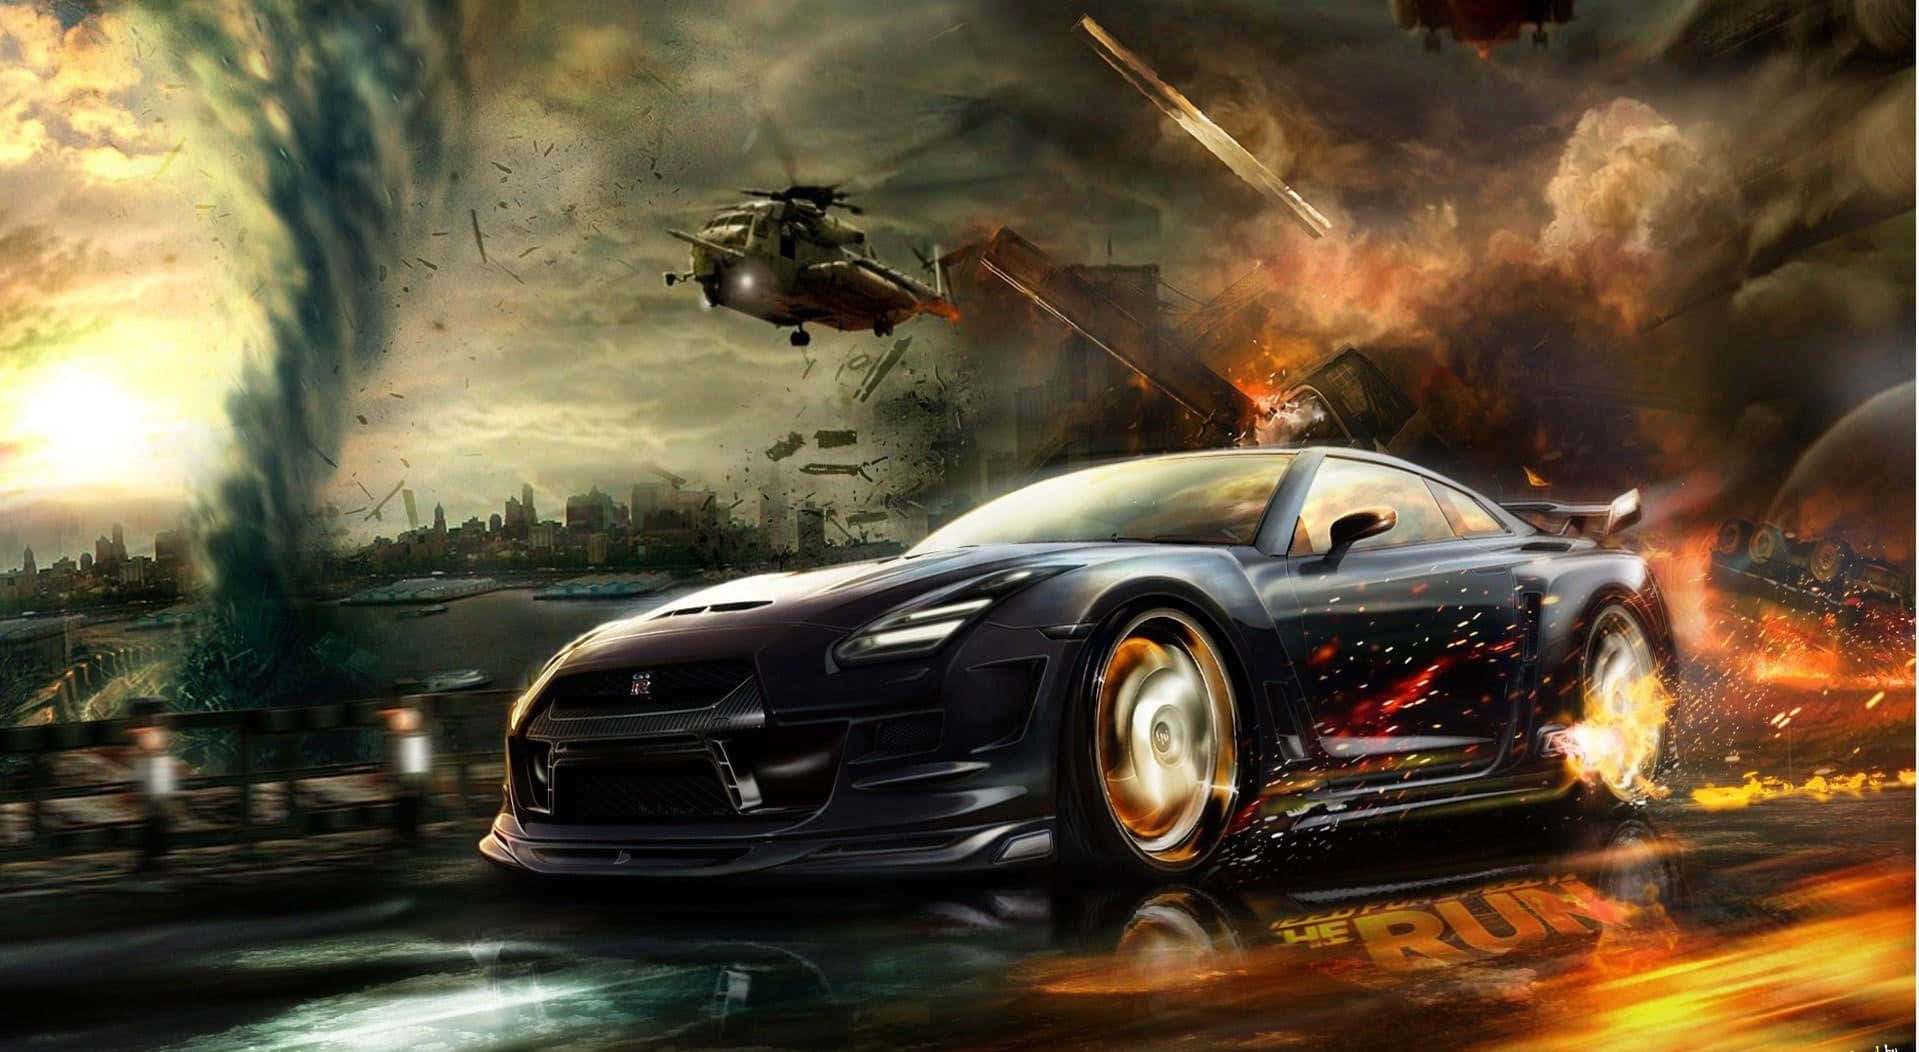 Sumérgeteen El Emocionante Mundo De Carreras De Los Juegos De Need For Speed Fondo de pantalla